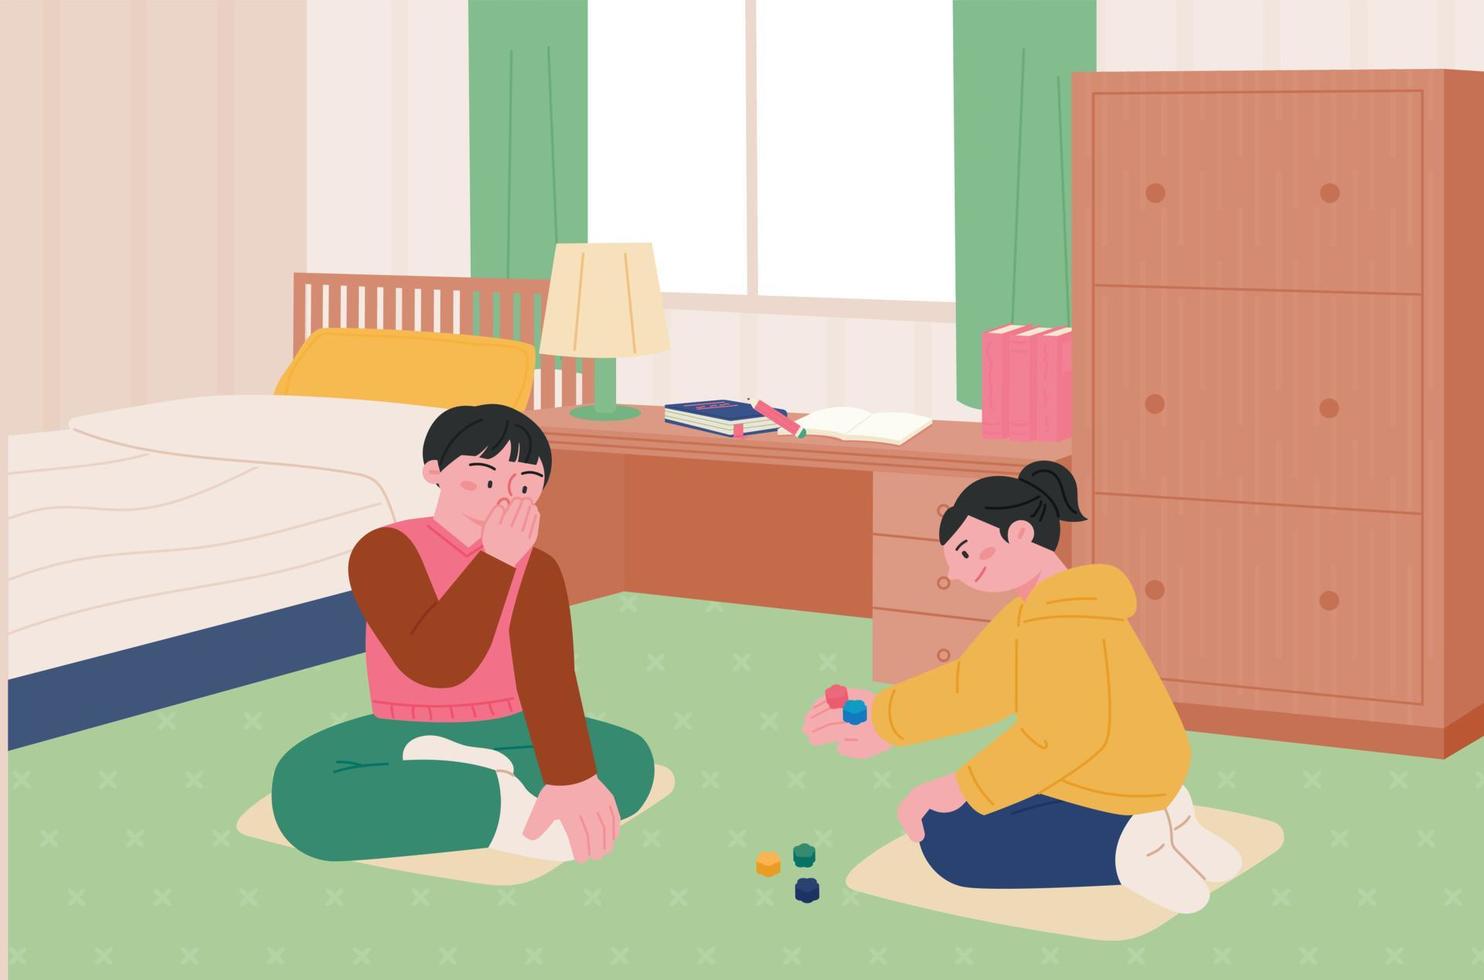 Juegos infantiles coreanos. niños sentados en la habitación y jugando el juego de las cinco piedras. vector